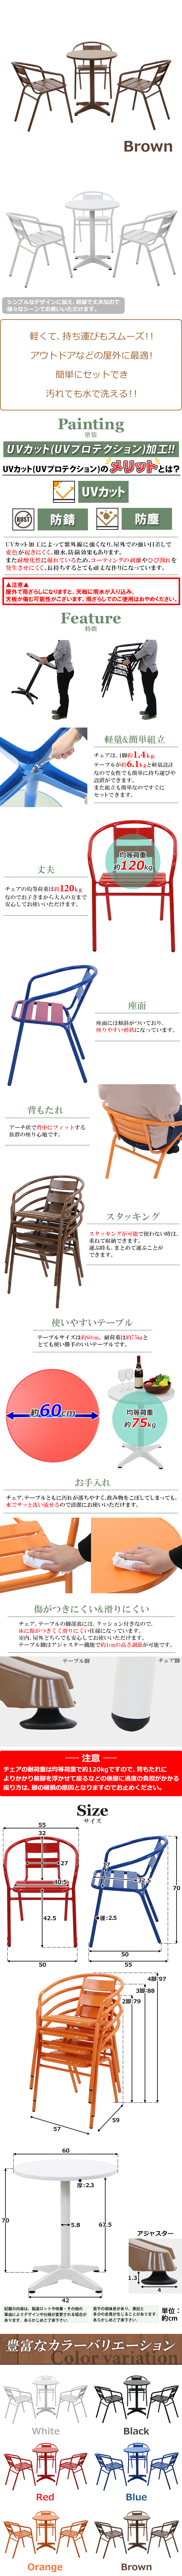 【人気日本製】送料無料 アルミ ガーデンチェア ガーデンテーブル 4点セット 茶 ガーデンセット アルミ製 ガーデンテーブル&チェアー3脚 軽量 ガーデンファニチャー